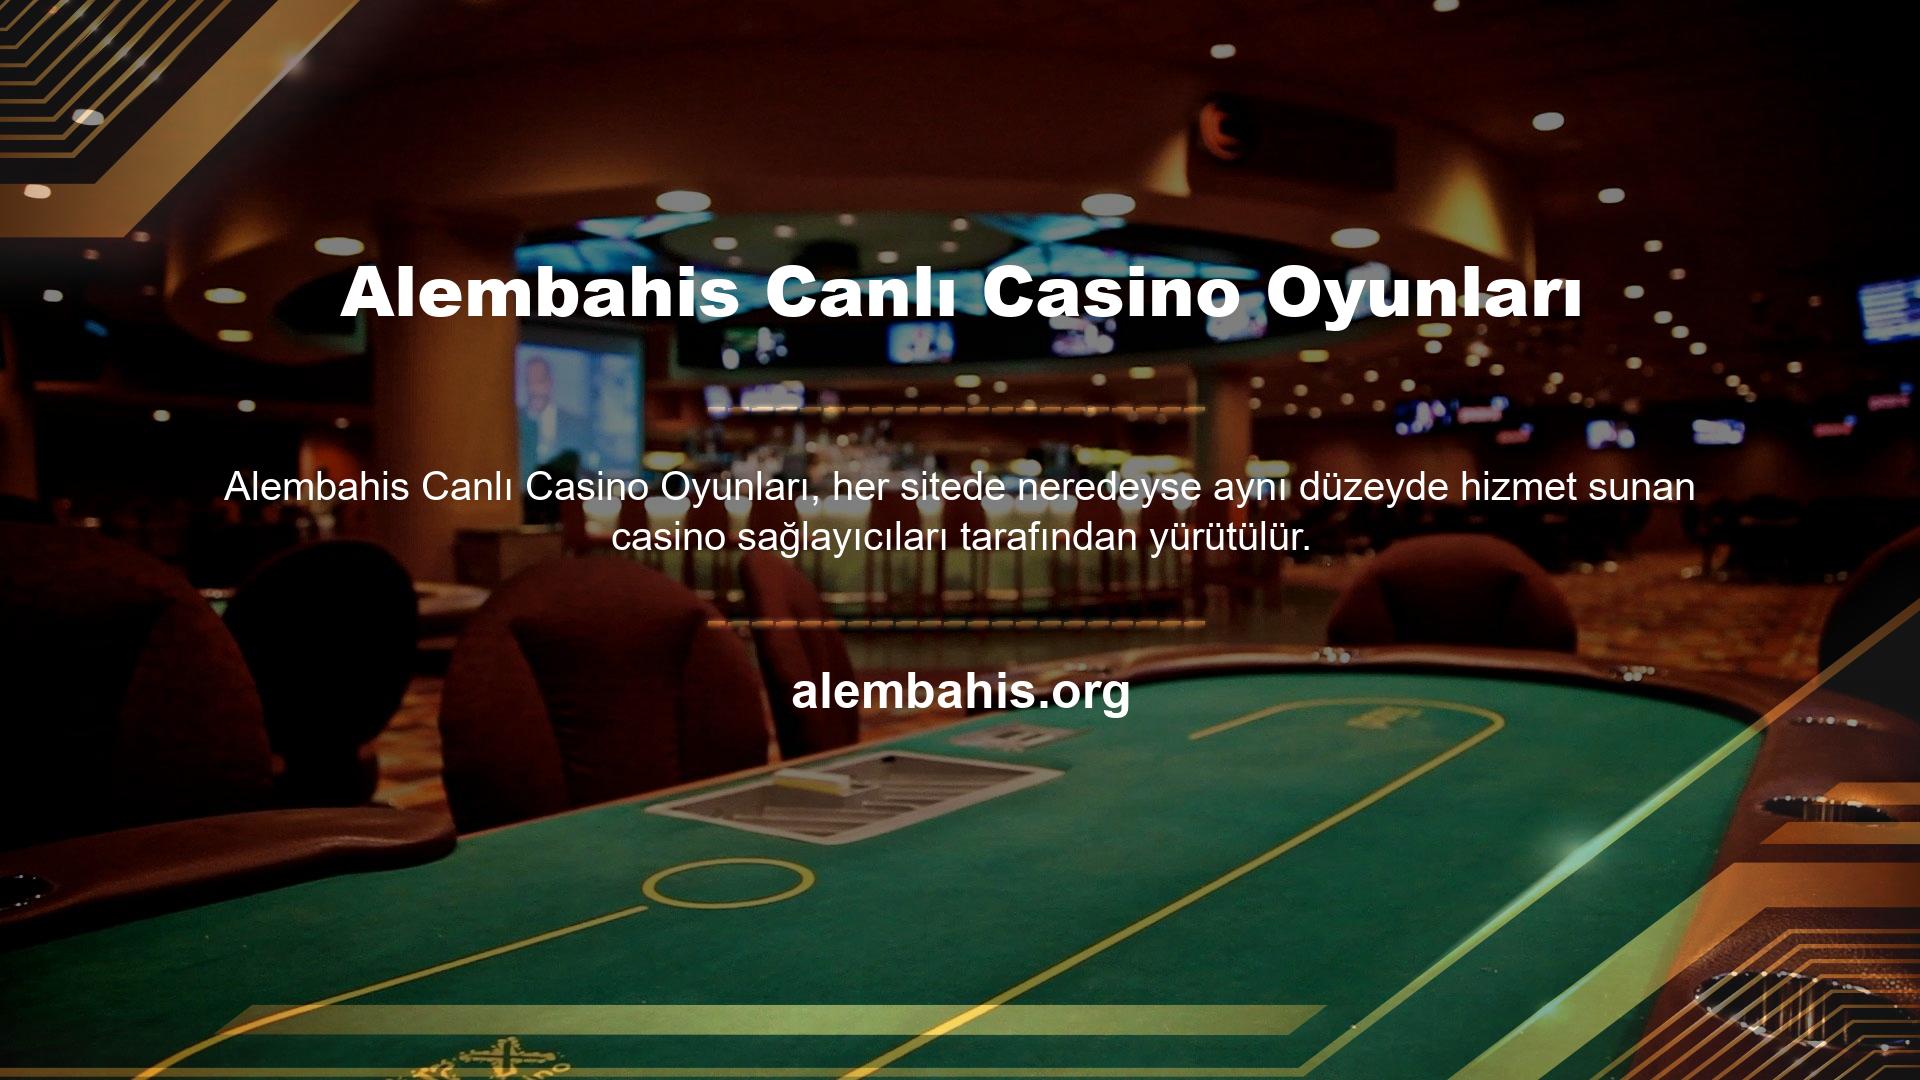 Casino servis sağlayıcıları sadece güvenilir buldukları sitelerle çalışırlar